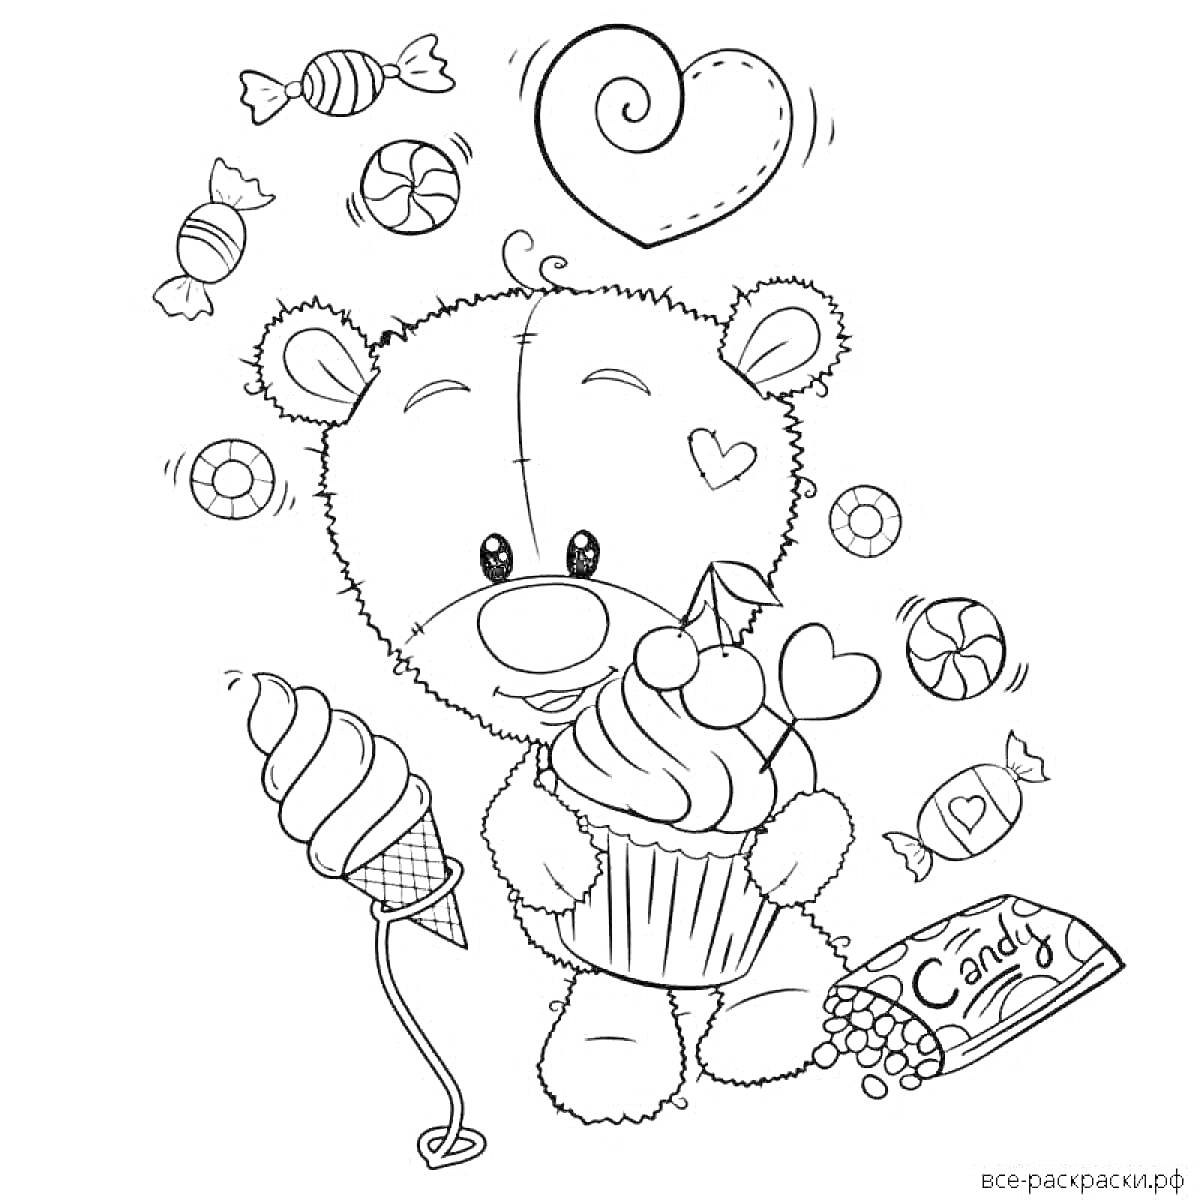 Раскраска Мишка Тедди с большим капкейком в руках, сердечком над головой и разнообразными конфетами вокруг